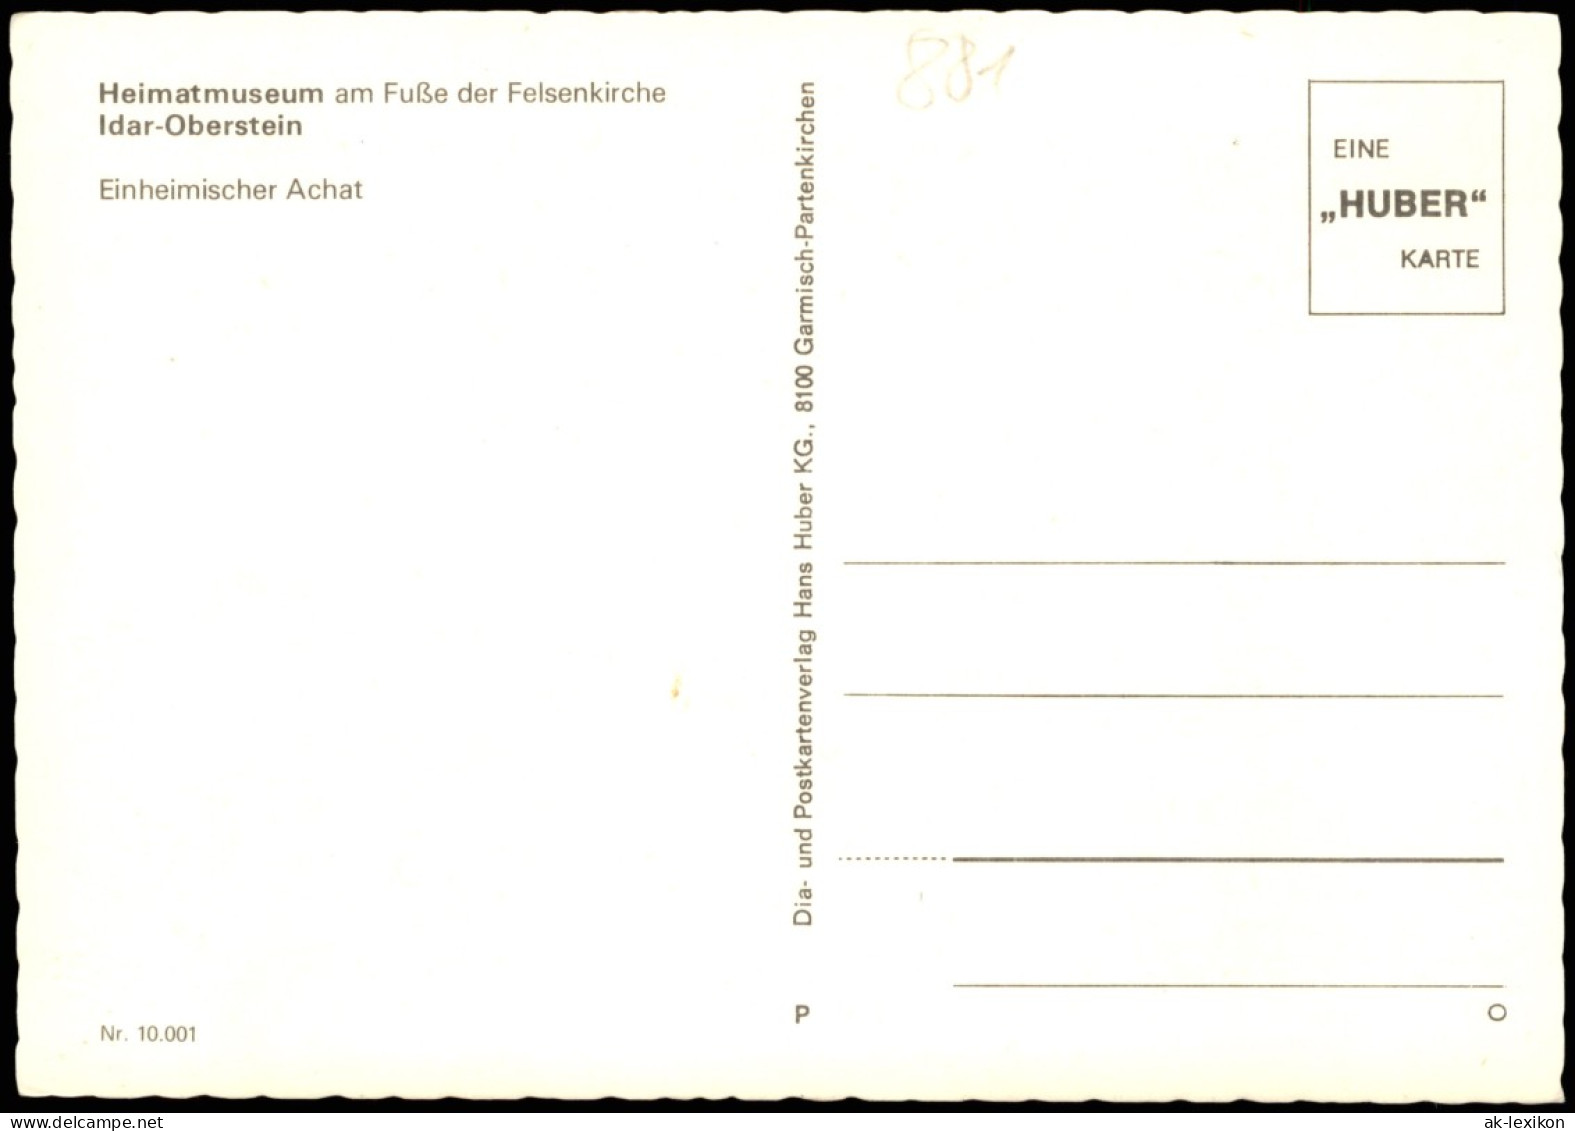 Idar-Oberstein Heimatmuseum Am Fuße Der Felsenkirche Einheimischer Achat 1980 - Idar Oberstein